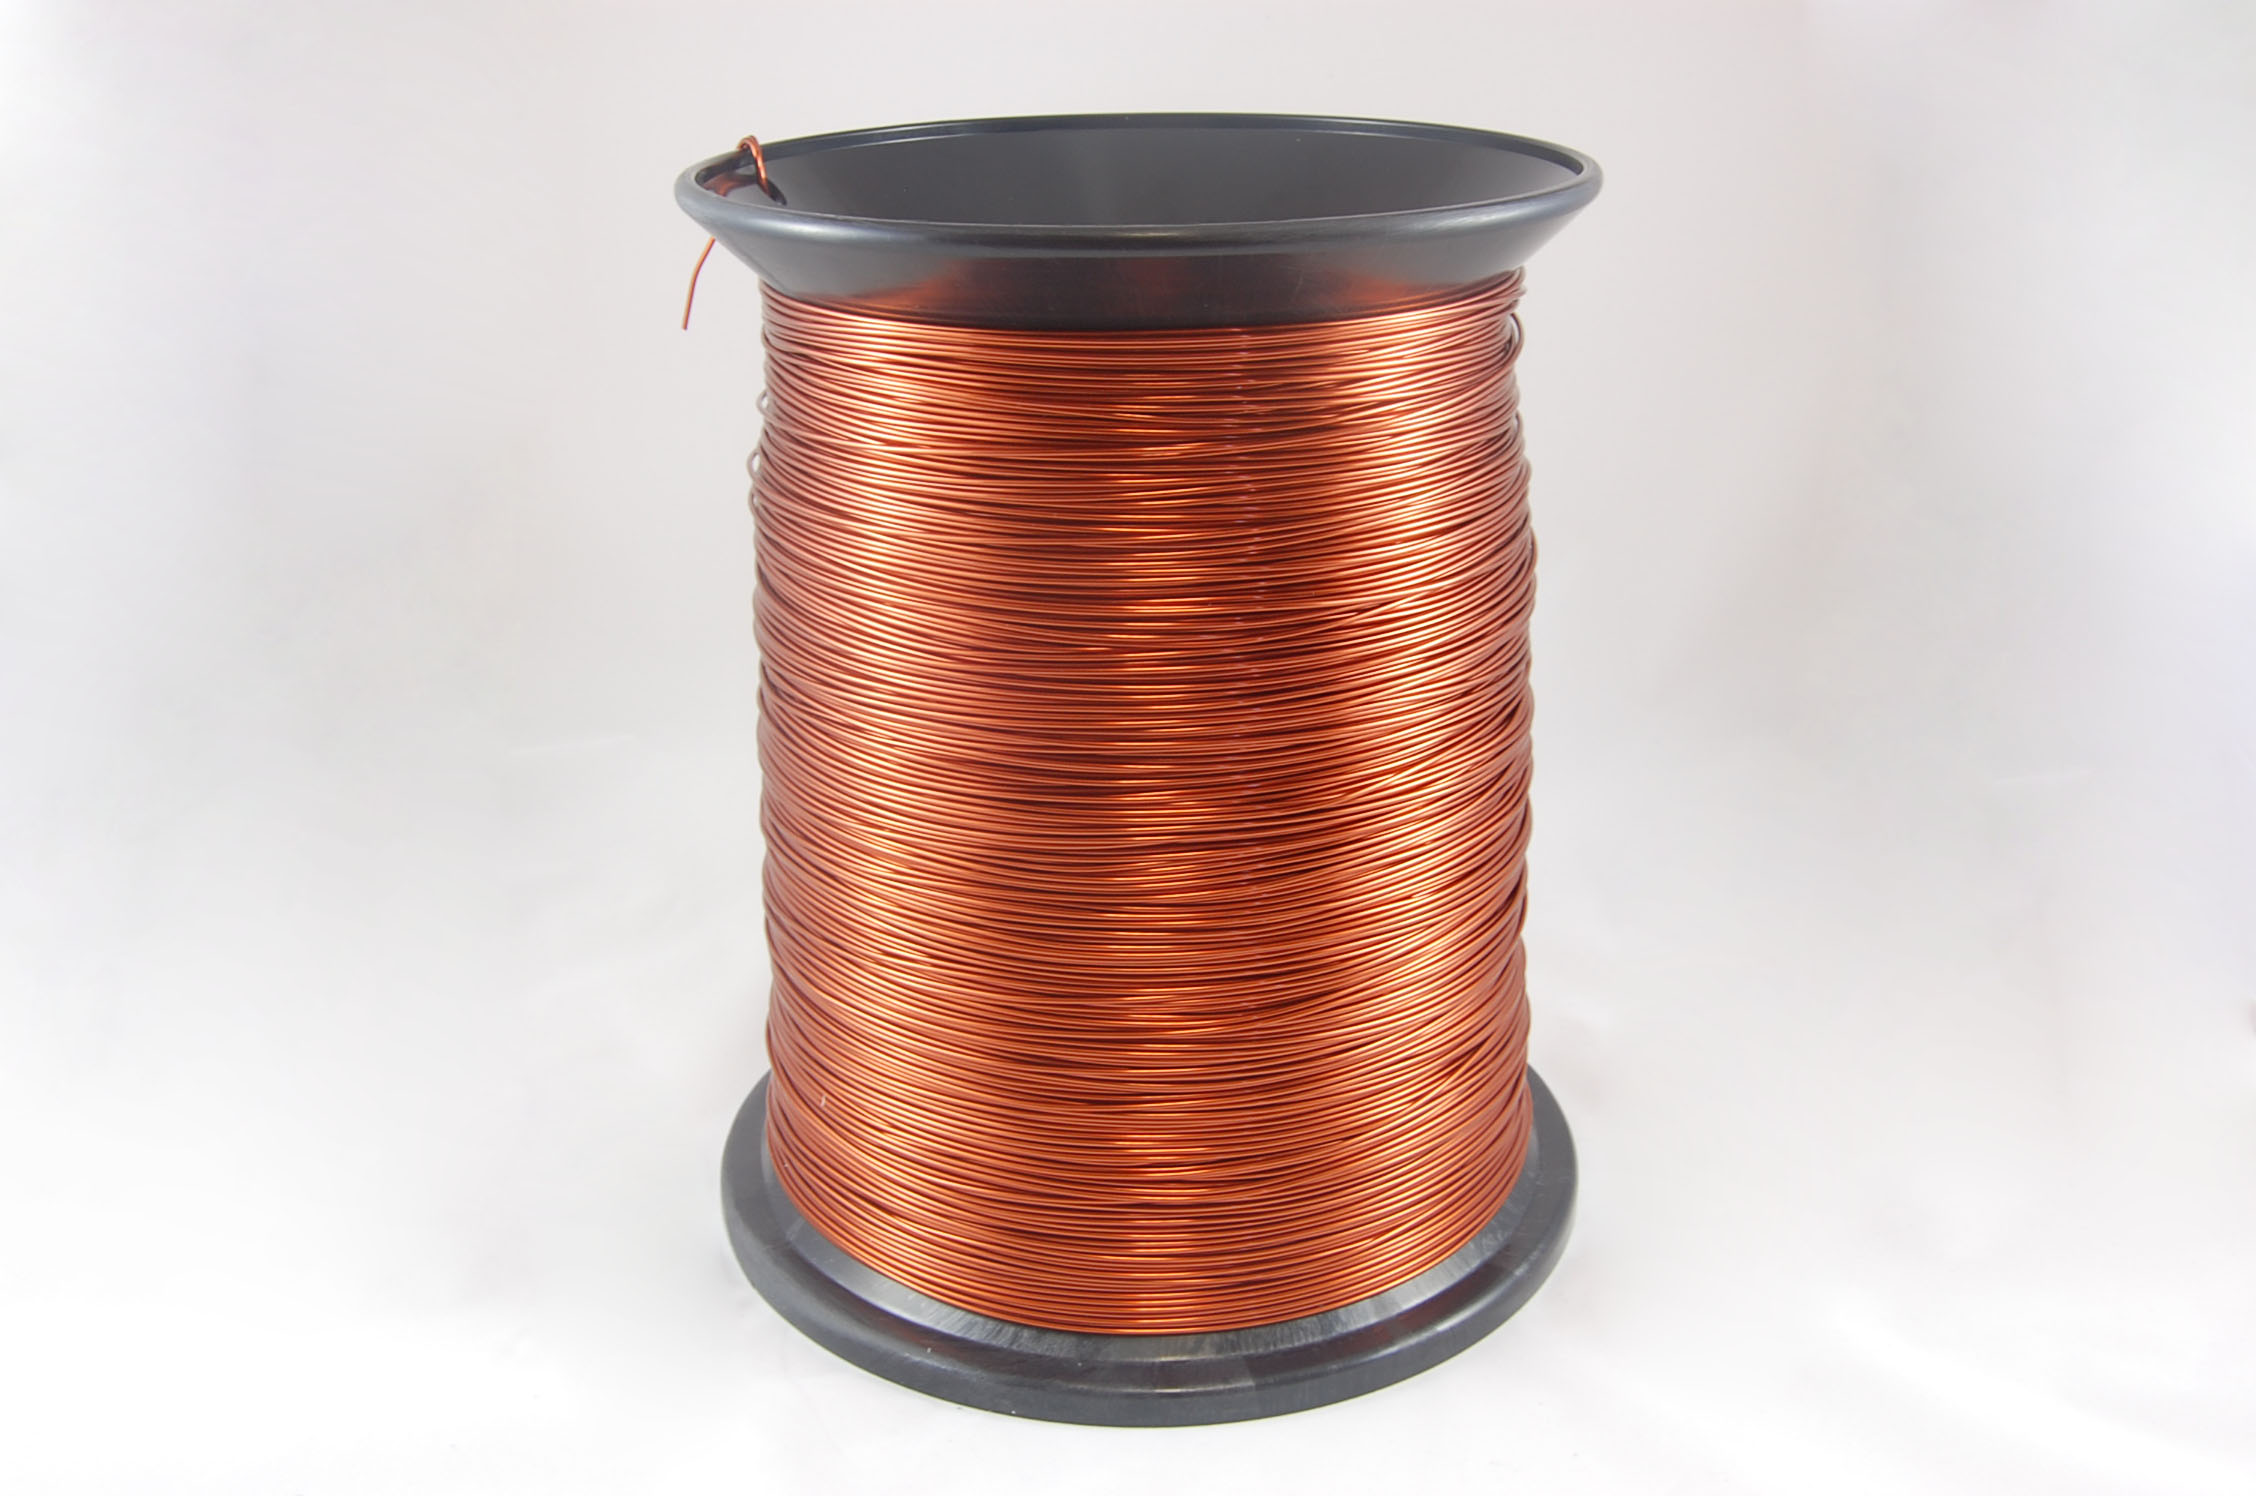 #21 Heavy GP/MR-200 Round MW 35 Copper Magnet Wire 200°C, copper, 85 LB pail (average wght.)